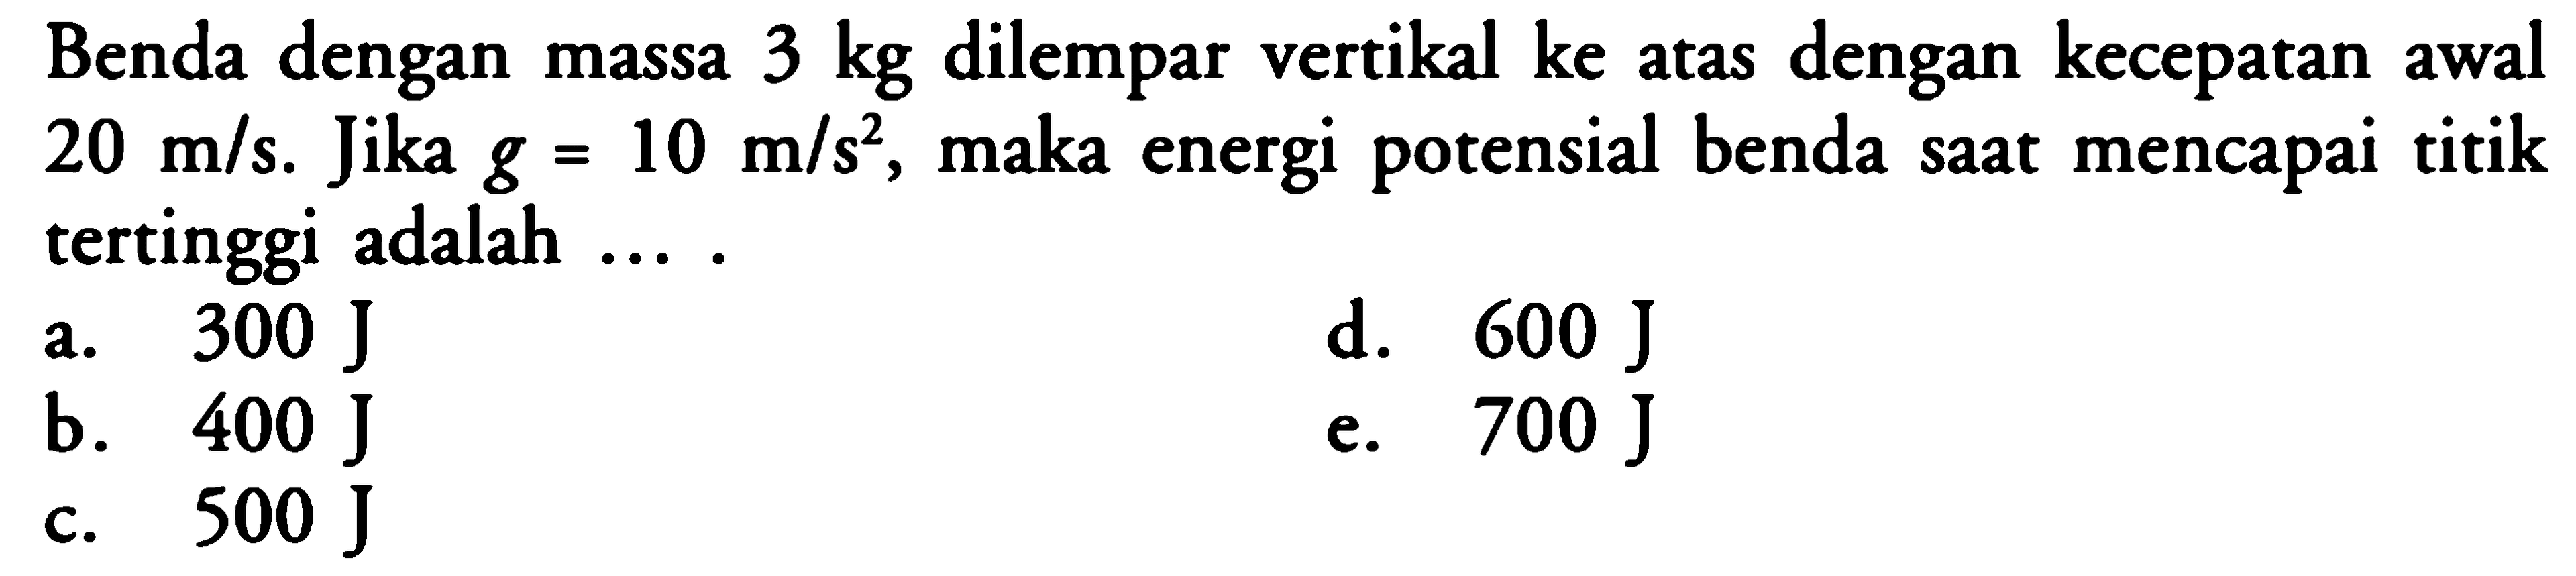 Benda dengan massa 3 kg dilempar vertikal ke atas dengan kecepatan awal  20 m / s. Jika  g=10 m / s^2, maka energi potensial benda saat mencapai titik tertinggi adalah ....